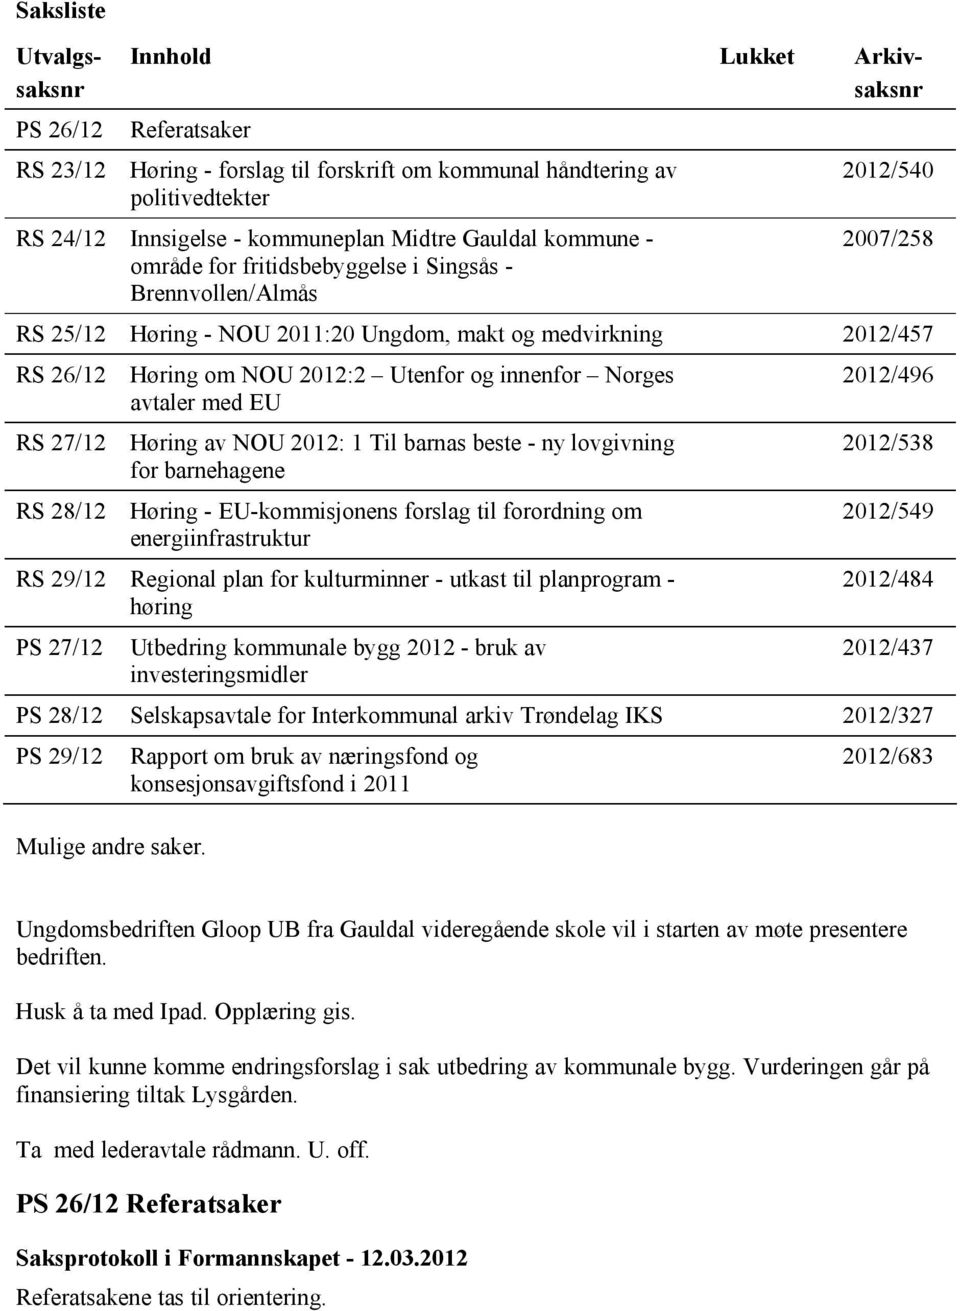 NOU 2012:2 Utenfor og innenfor Norges avtaler med EU Høring av NOU 2012: 1 Til barnas beste - ny lovgivning for barnehagene Høring - EU-kommisjonens forslag til forordning om energiinfrastruktur RS